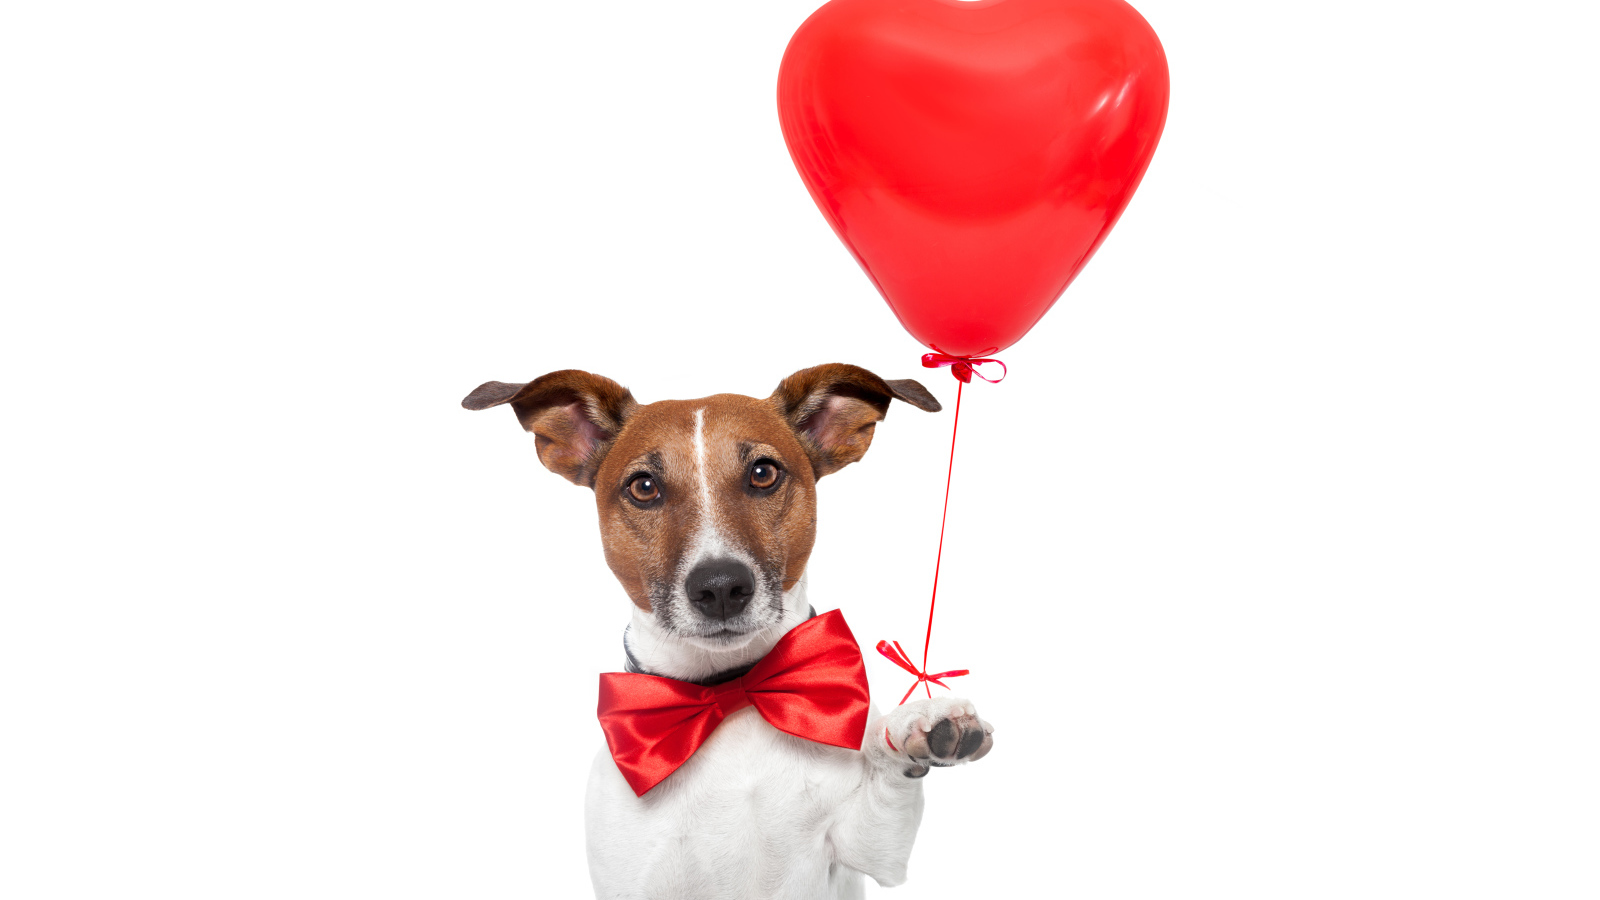 Джек-рассел-терьер с красным шариком в форме сердца на белом фоне